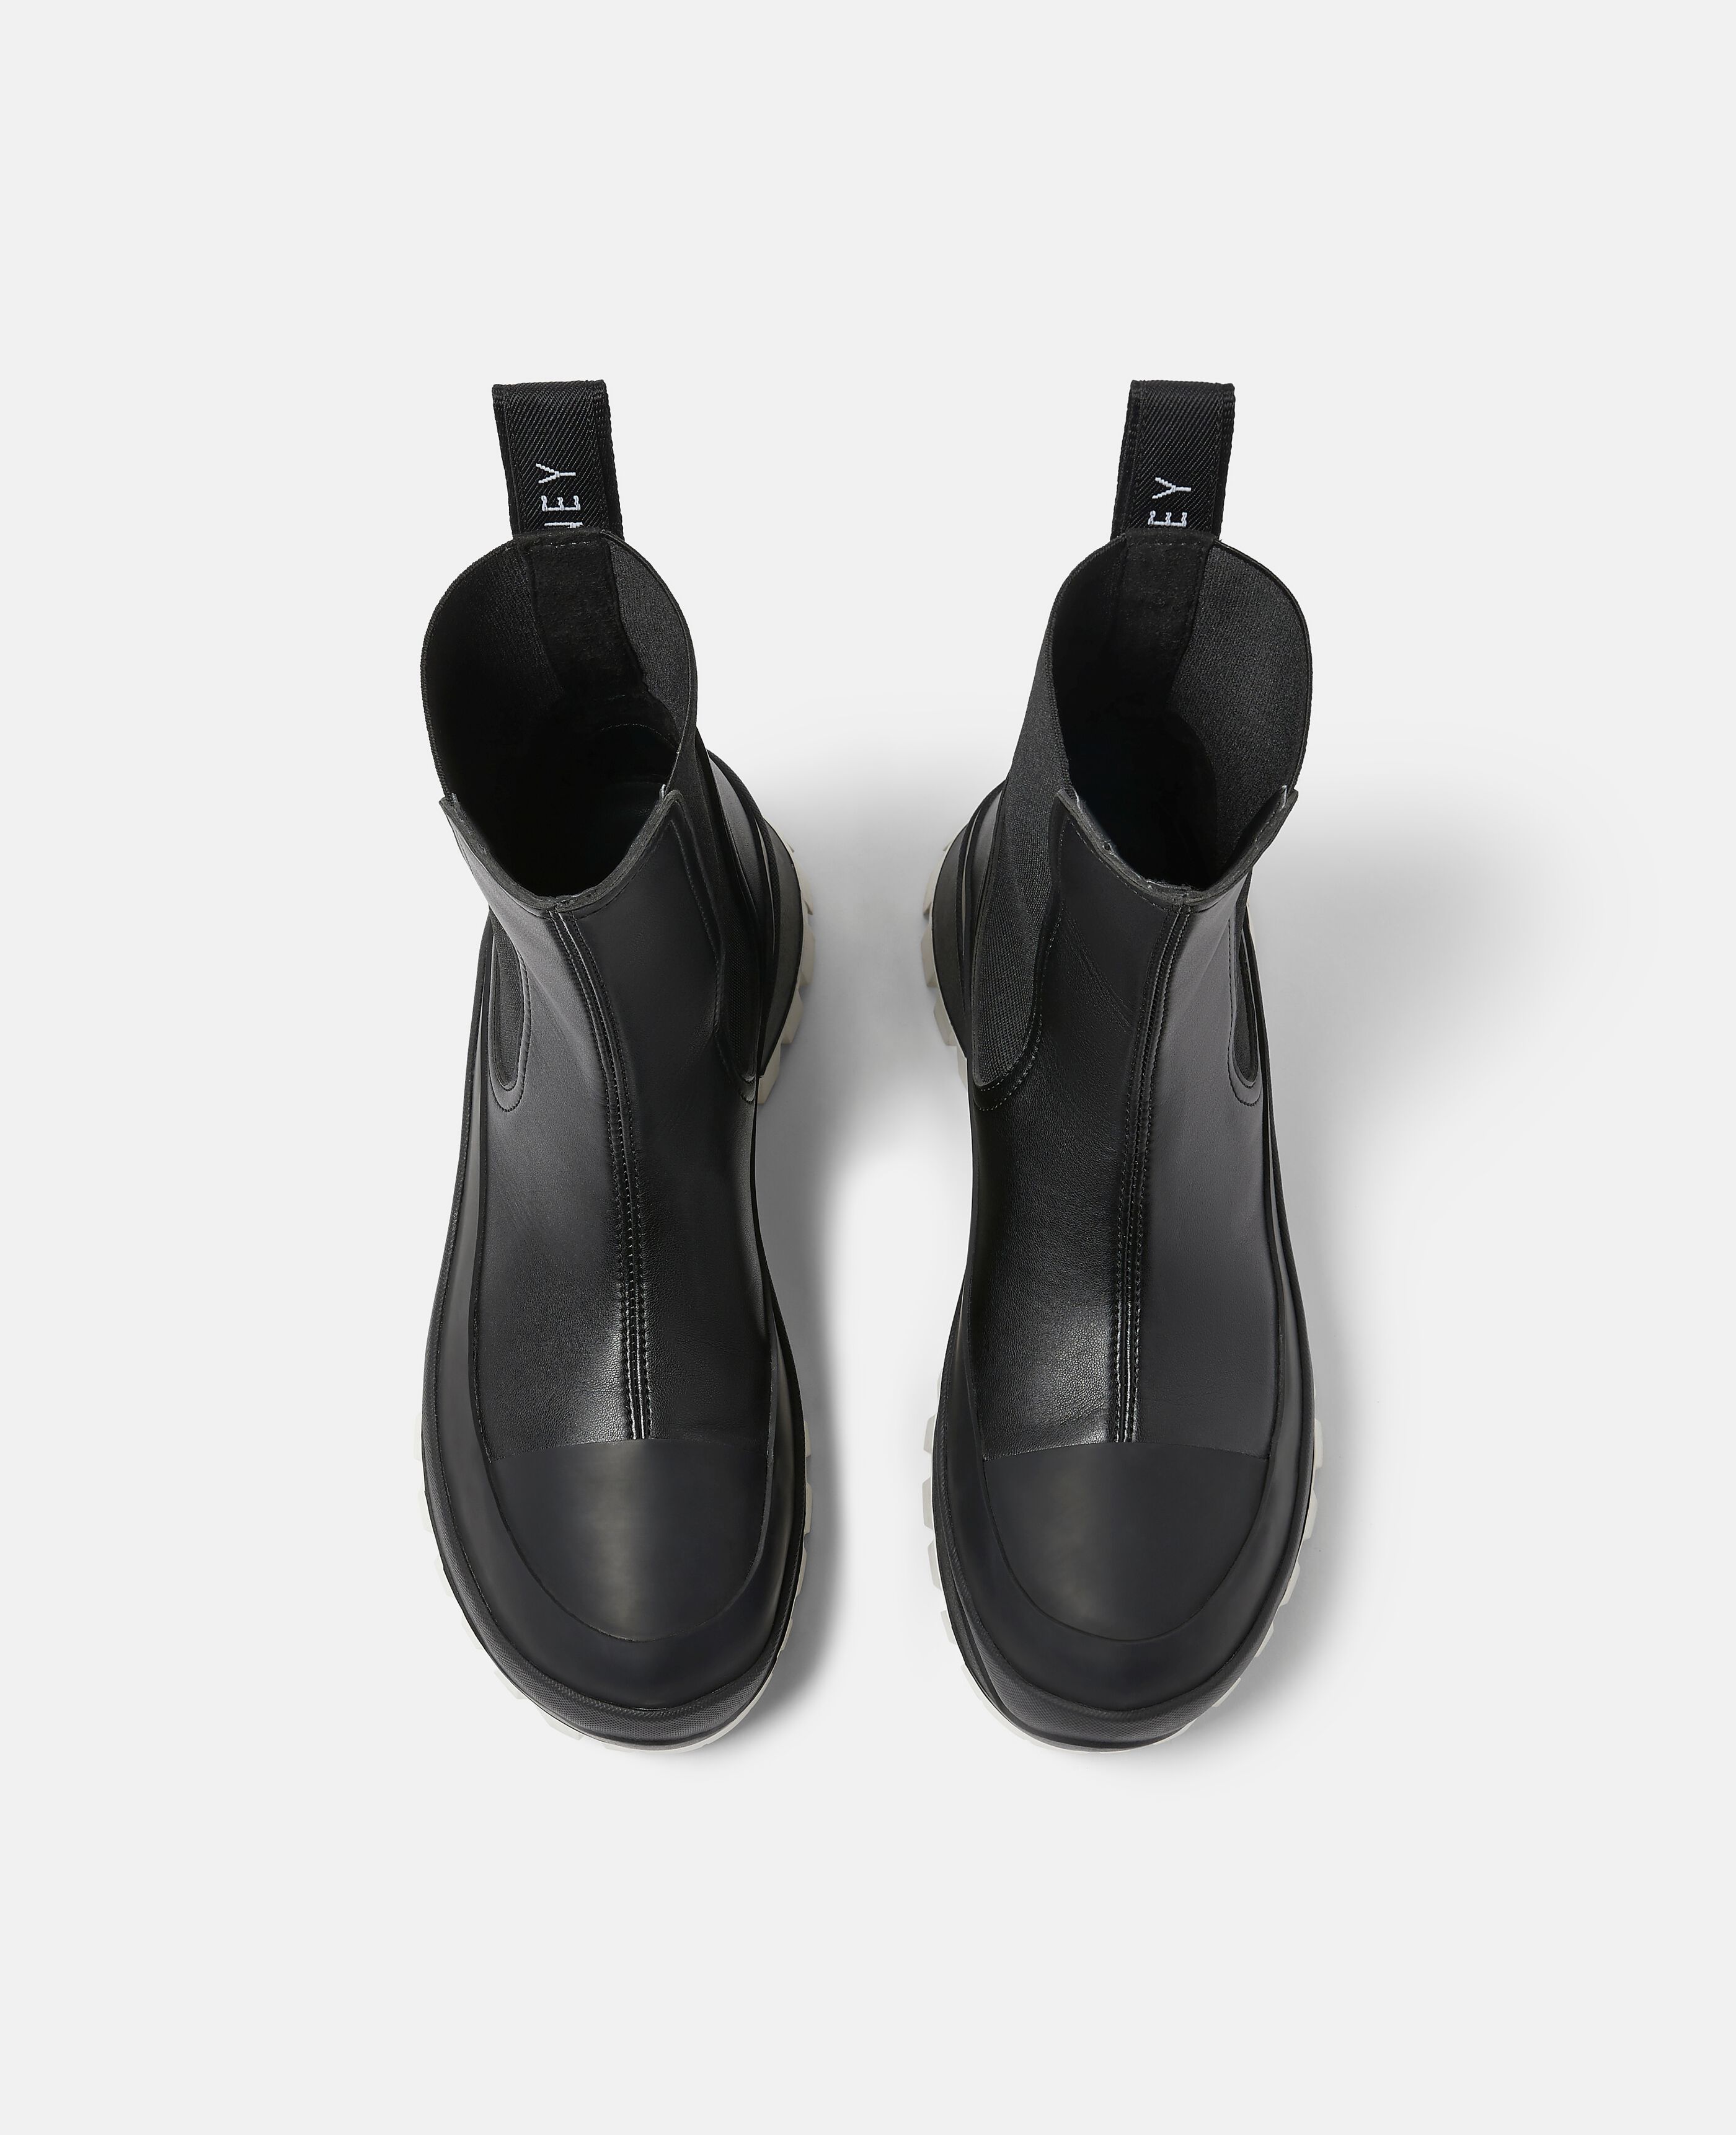 Stella McCartney サイドゴアブーツ size37 黒 24cm - ブーツ